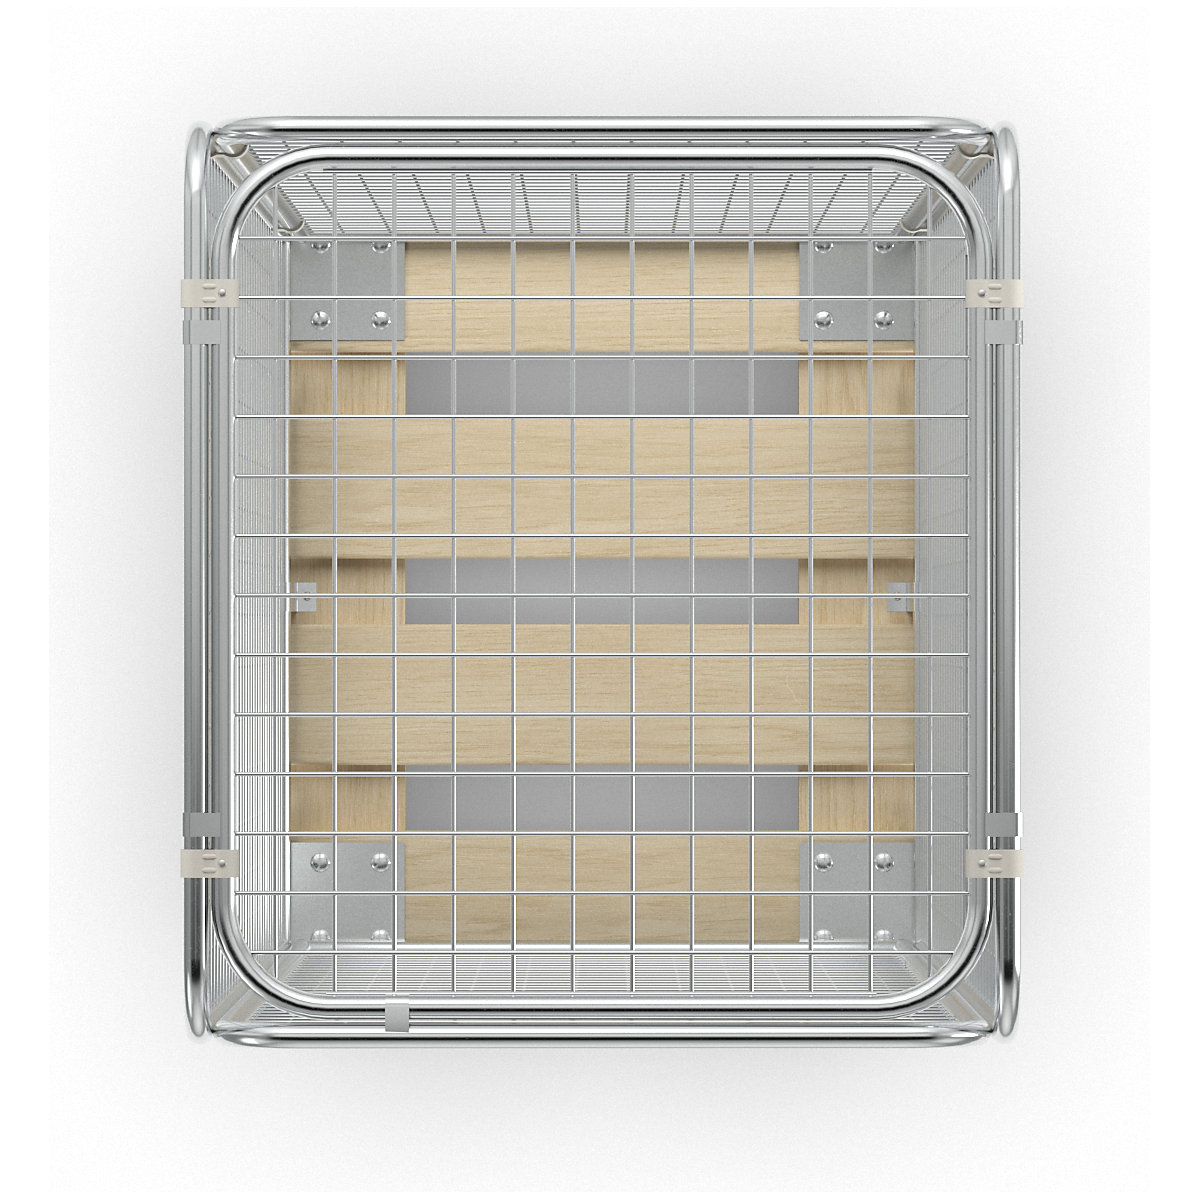 Antidiefstalcontainer met houten laadbord (Productafbeelding 38)-37